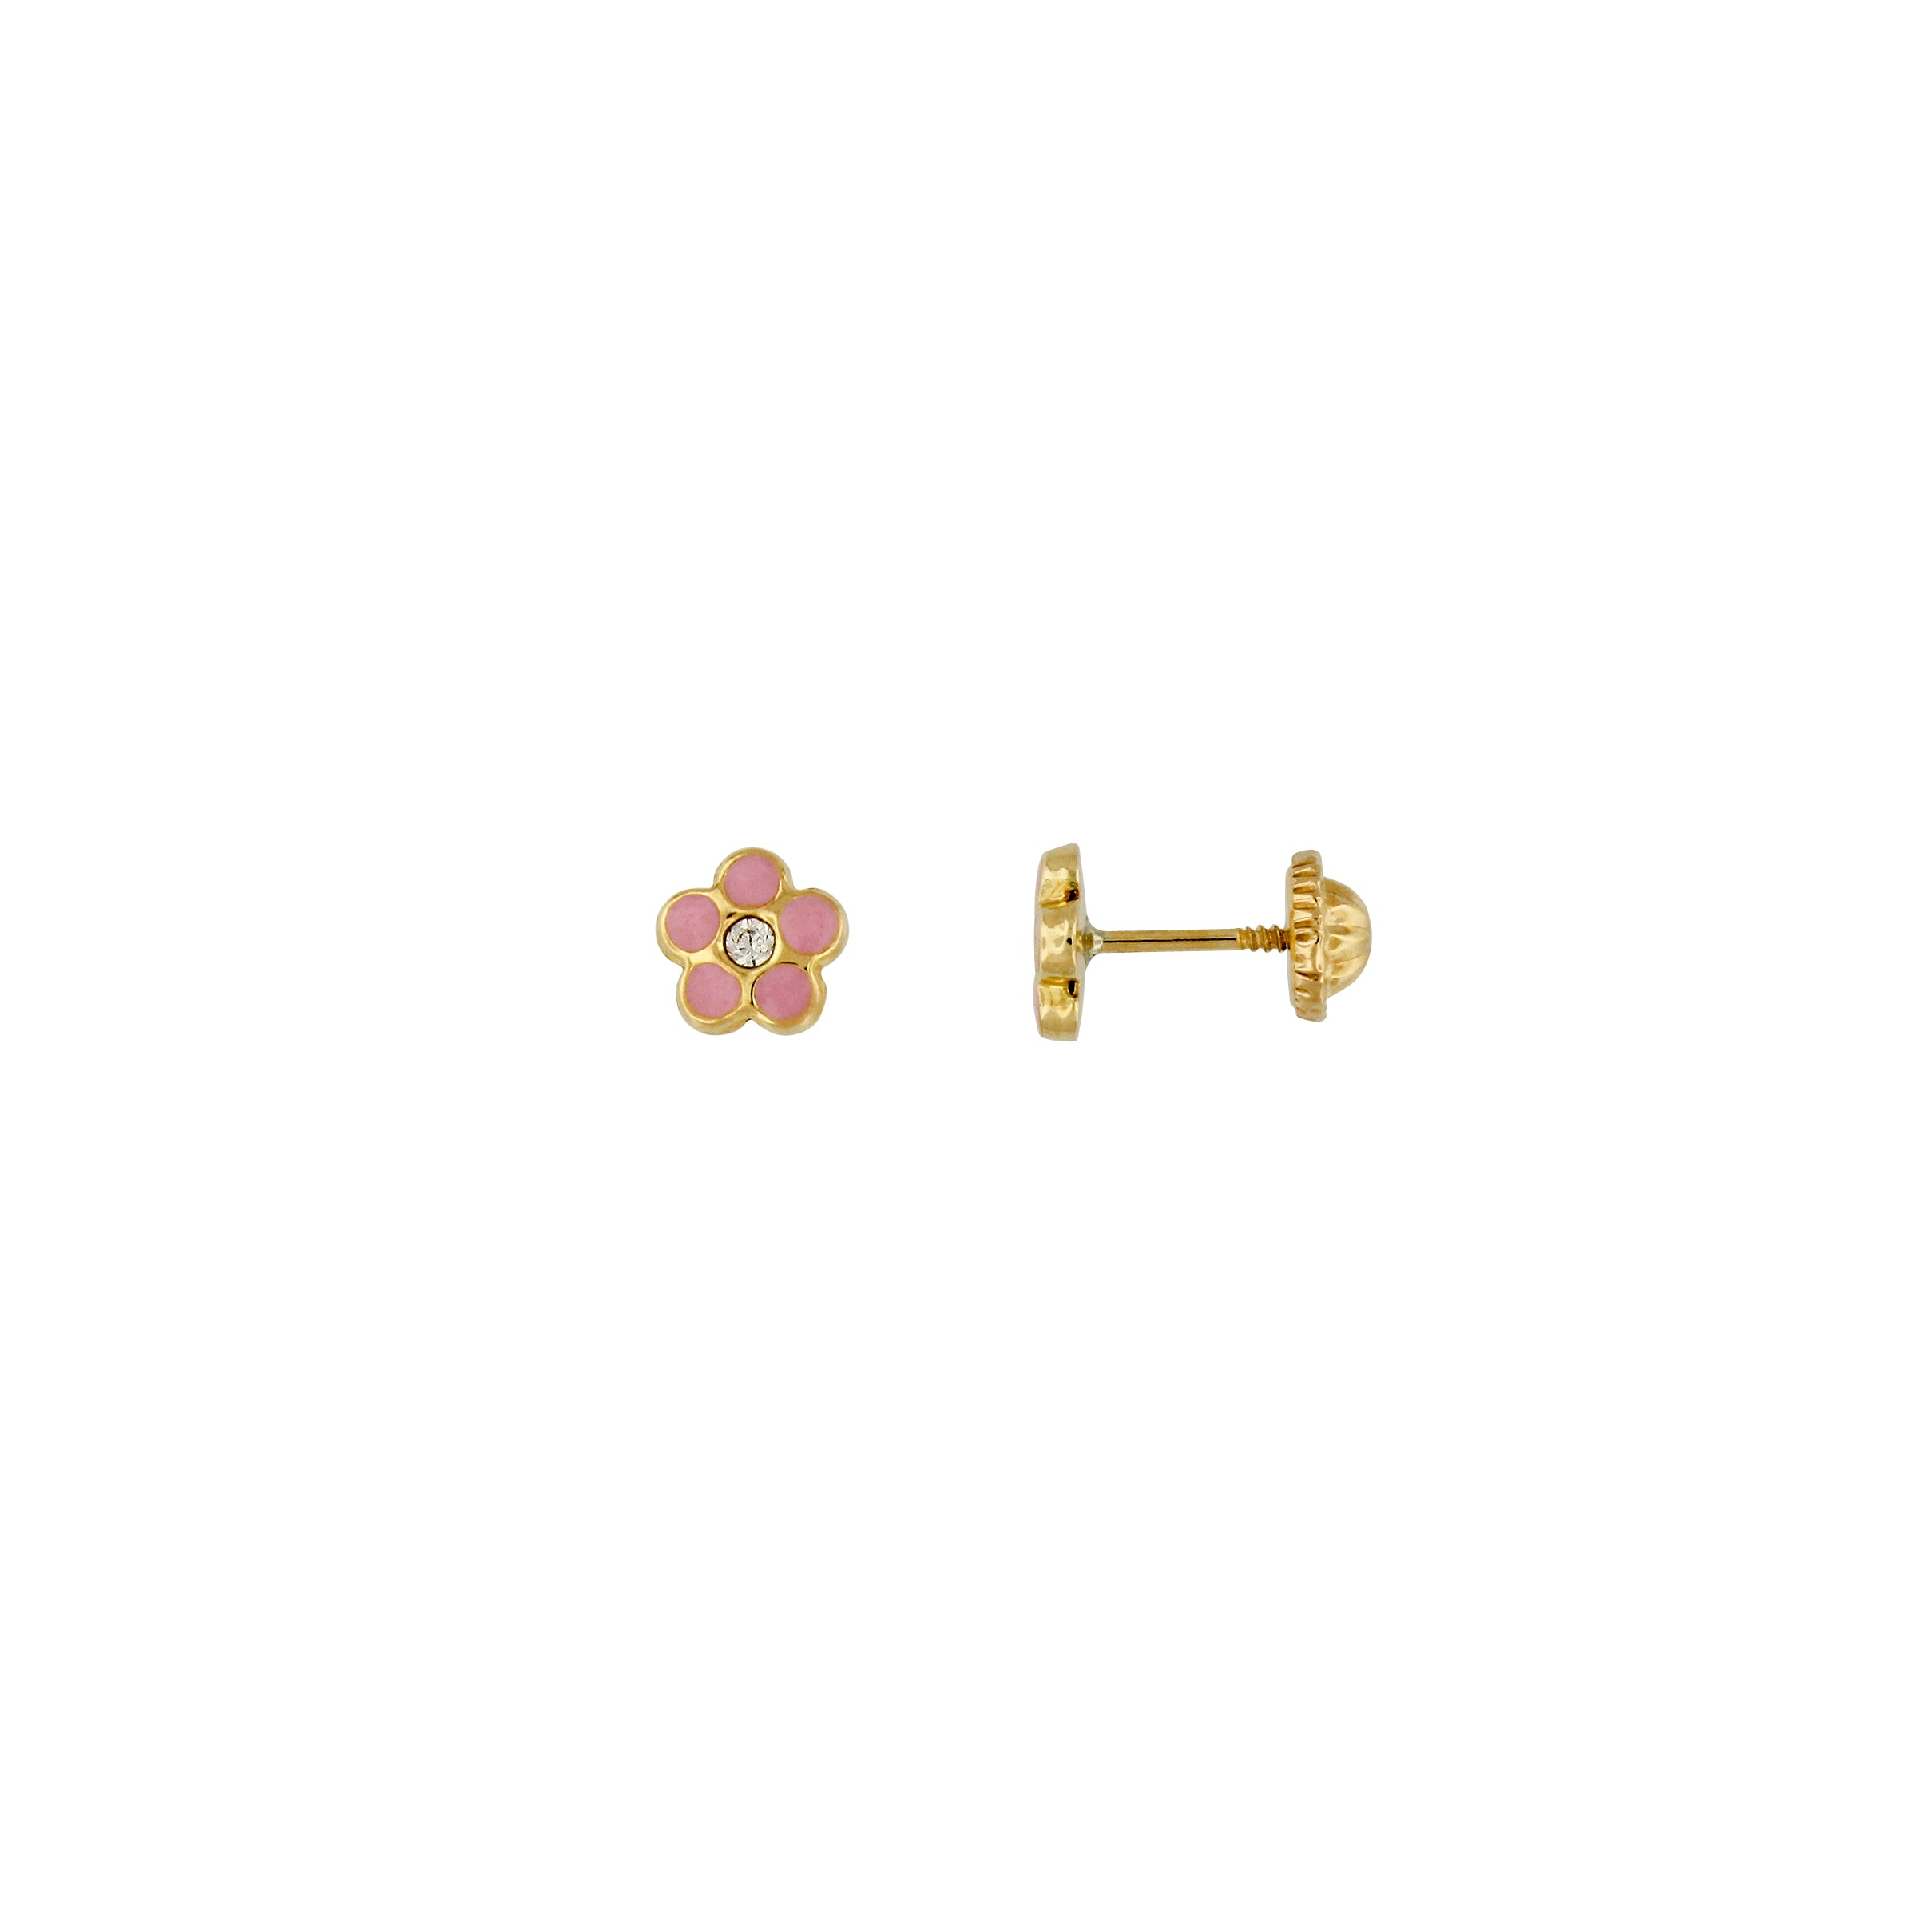 Bfly 10k Gold Pink Flower Enamel Baby Earrings